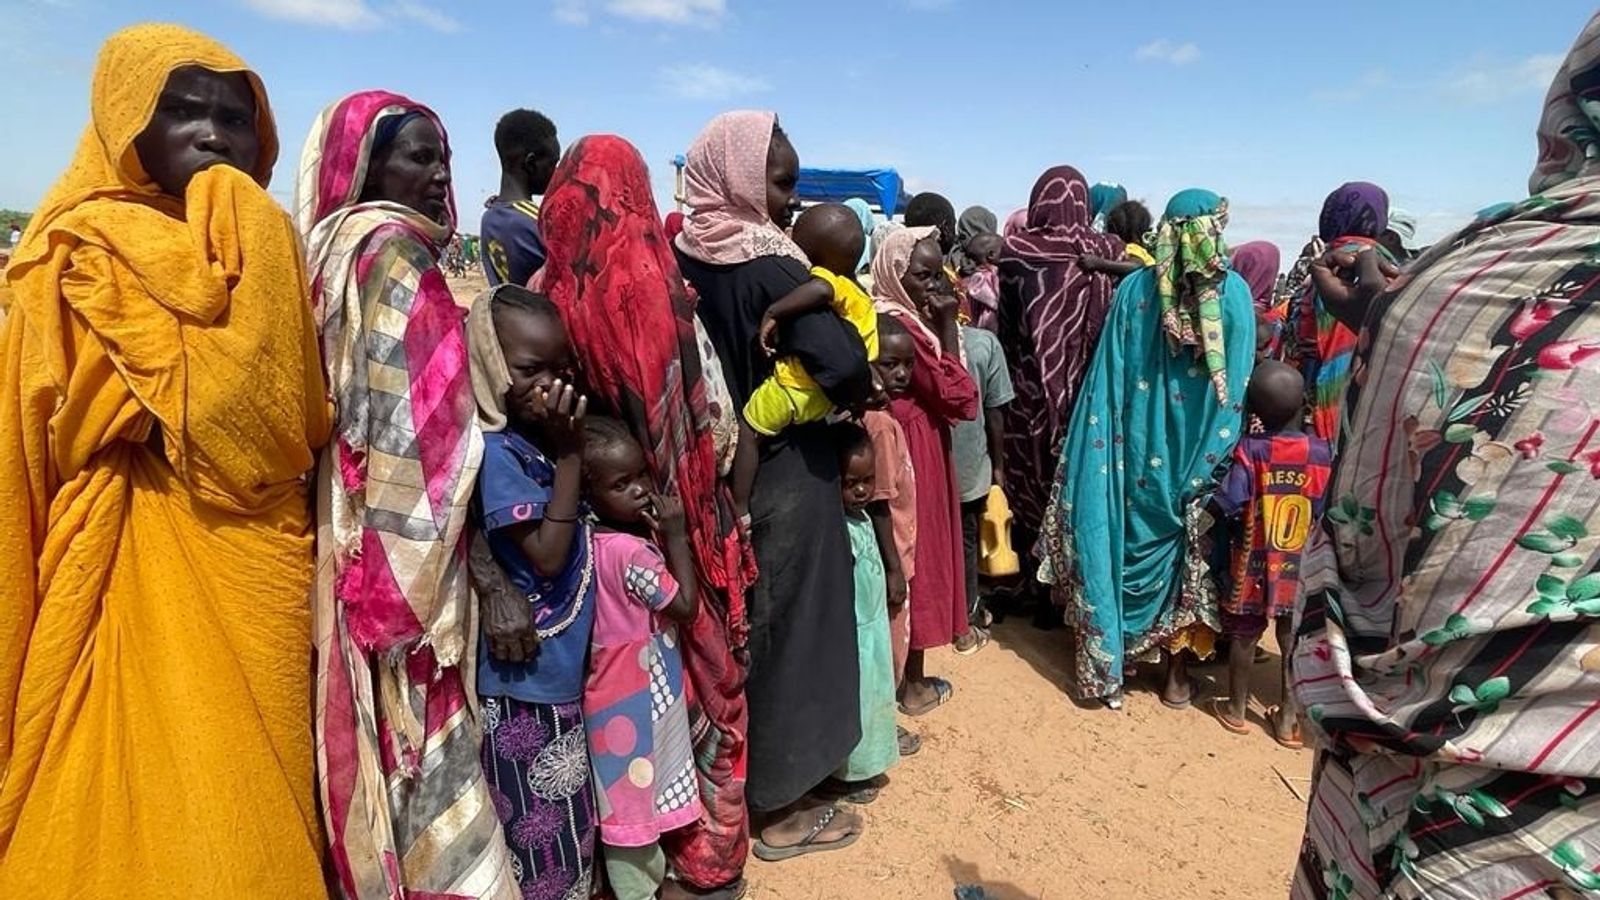 Soudan : Les civils sont piégés alors que l’ONU met en garde contre une possible attaque imminente contre la ville d’Al Fashir par les forces de soutien rapide |  Nouvelles du monde